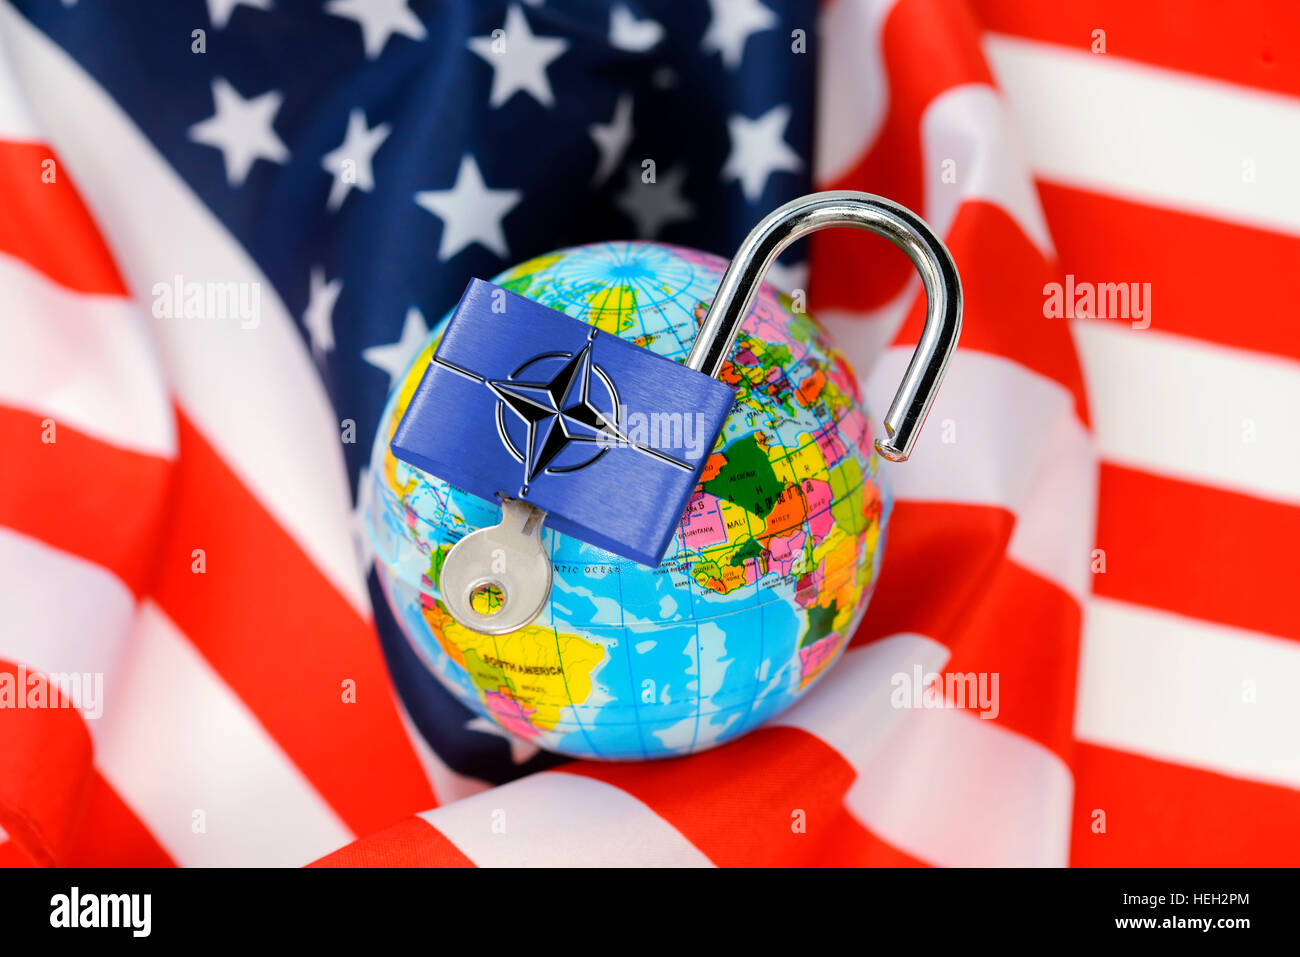 Weltkugel mit einem offenen Vorhaengeschloss und Nato-Schriftzug auf einer USA-Fahne, amerikanische Sicherheitspolitik im Wandel Stock Photo